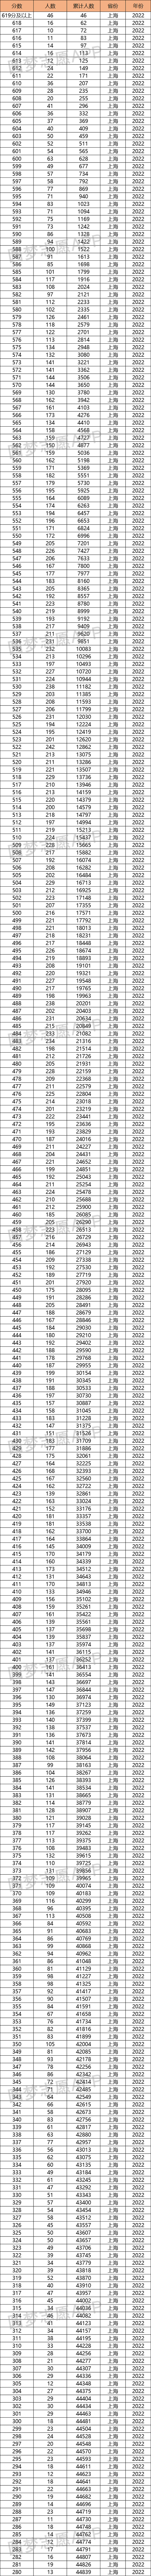 2022上海高考一分一段排名表-上海高考位次表2022